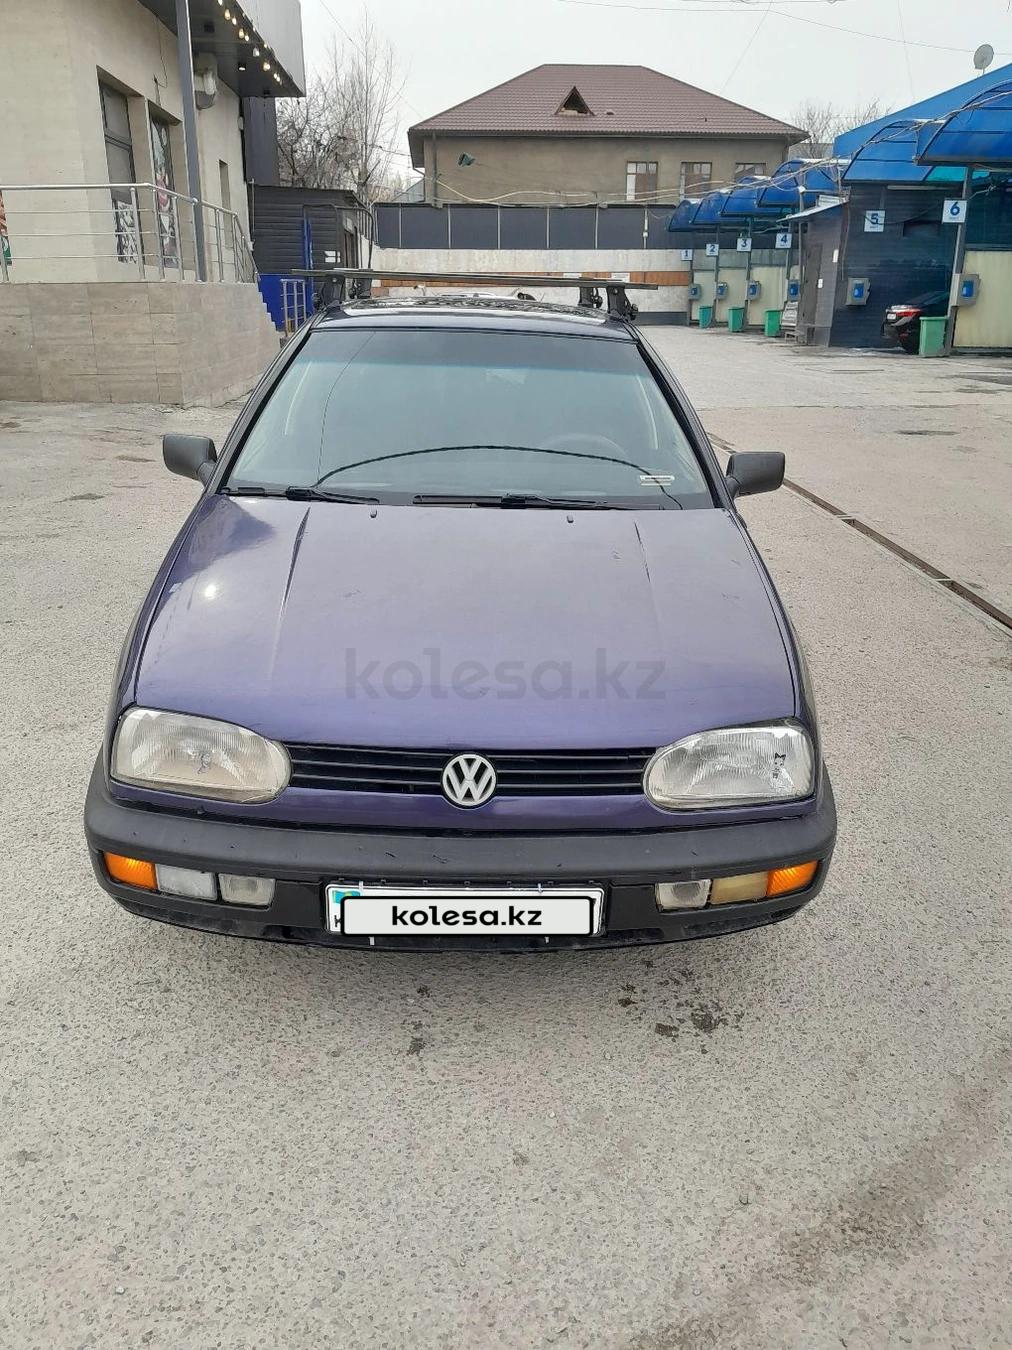 Volkswagen Golf 1994 г.